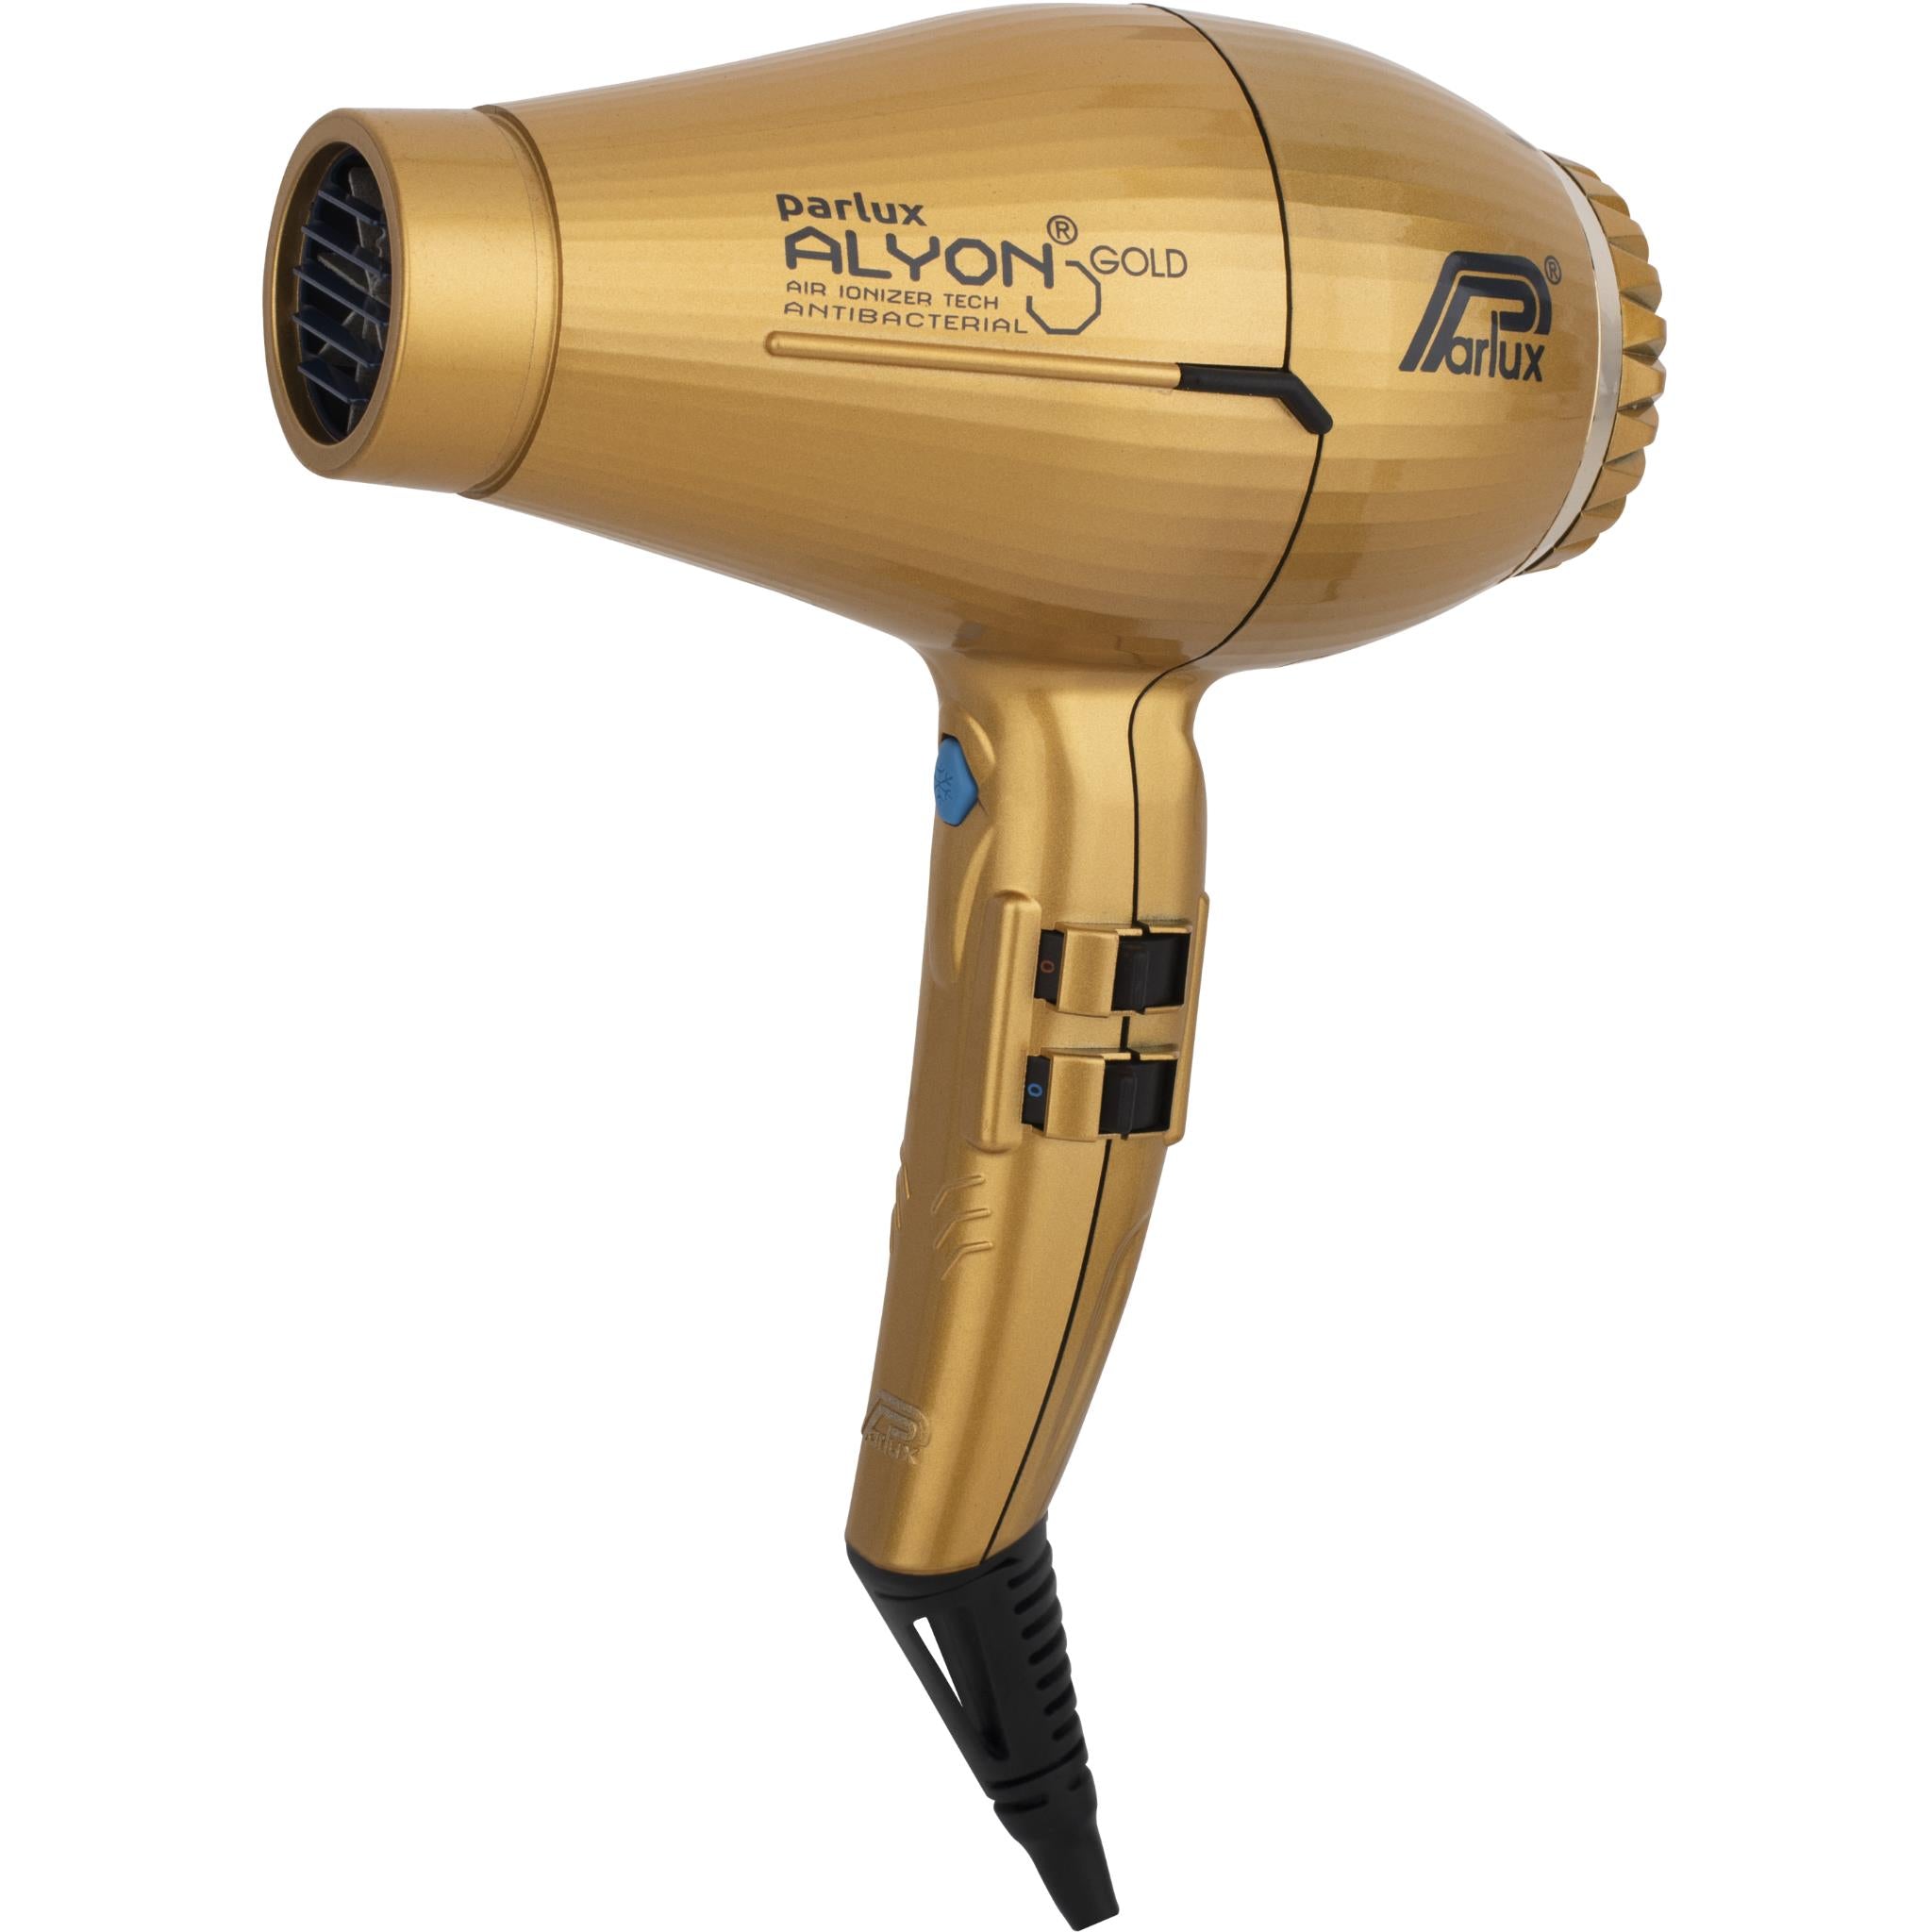 Parlux Alyon Air Ionizer 2250W Hair Dryer (Gold) - JB Hi-Fi